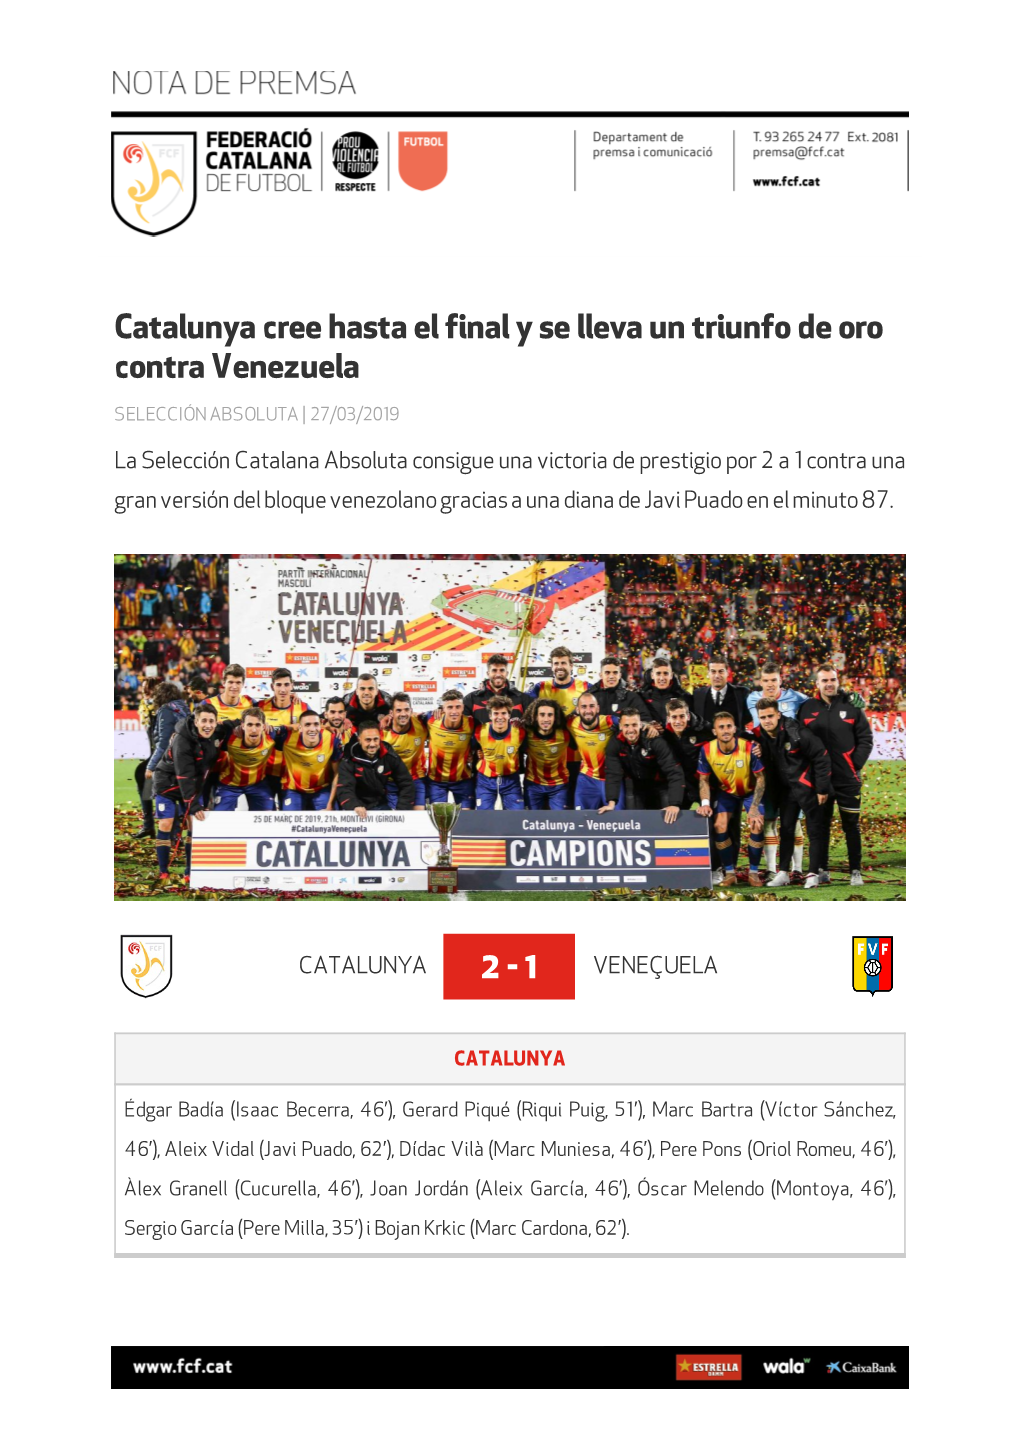 Catalunya Cree Hasta El Final Y Se Lleva Un Triunfo De Oro Contra Venezuela